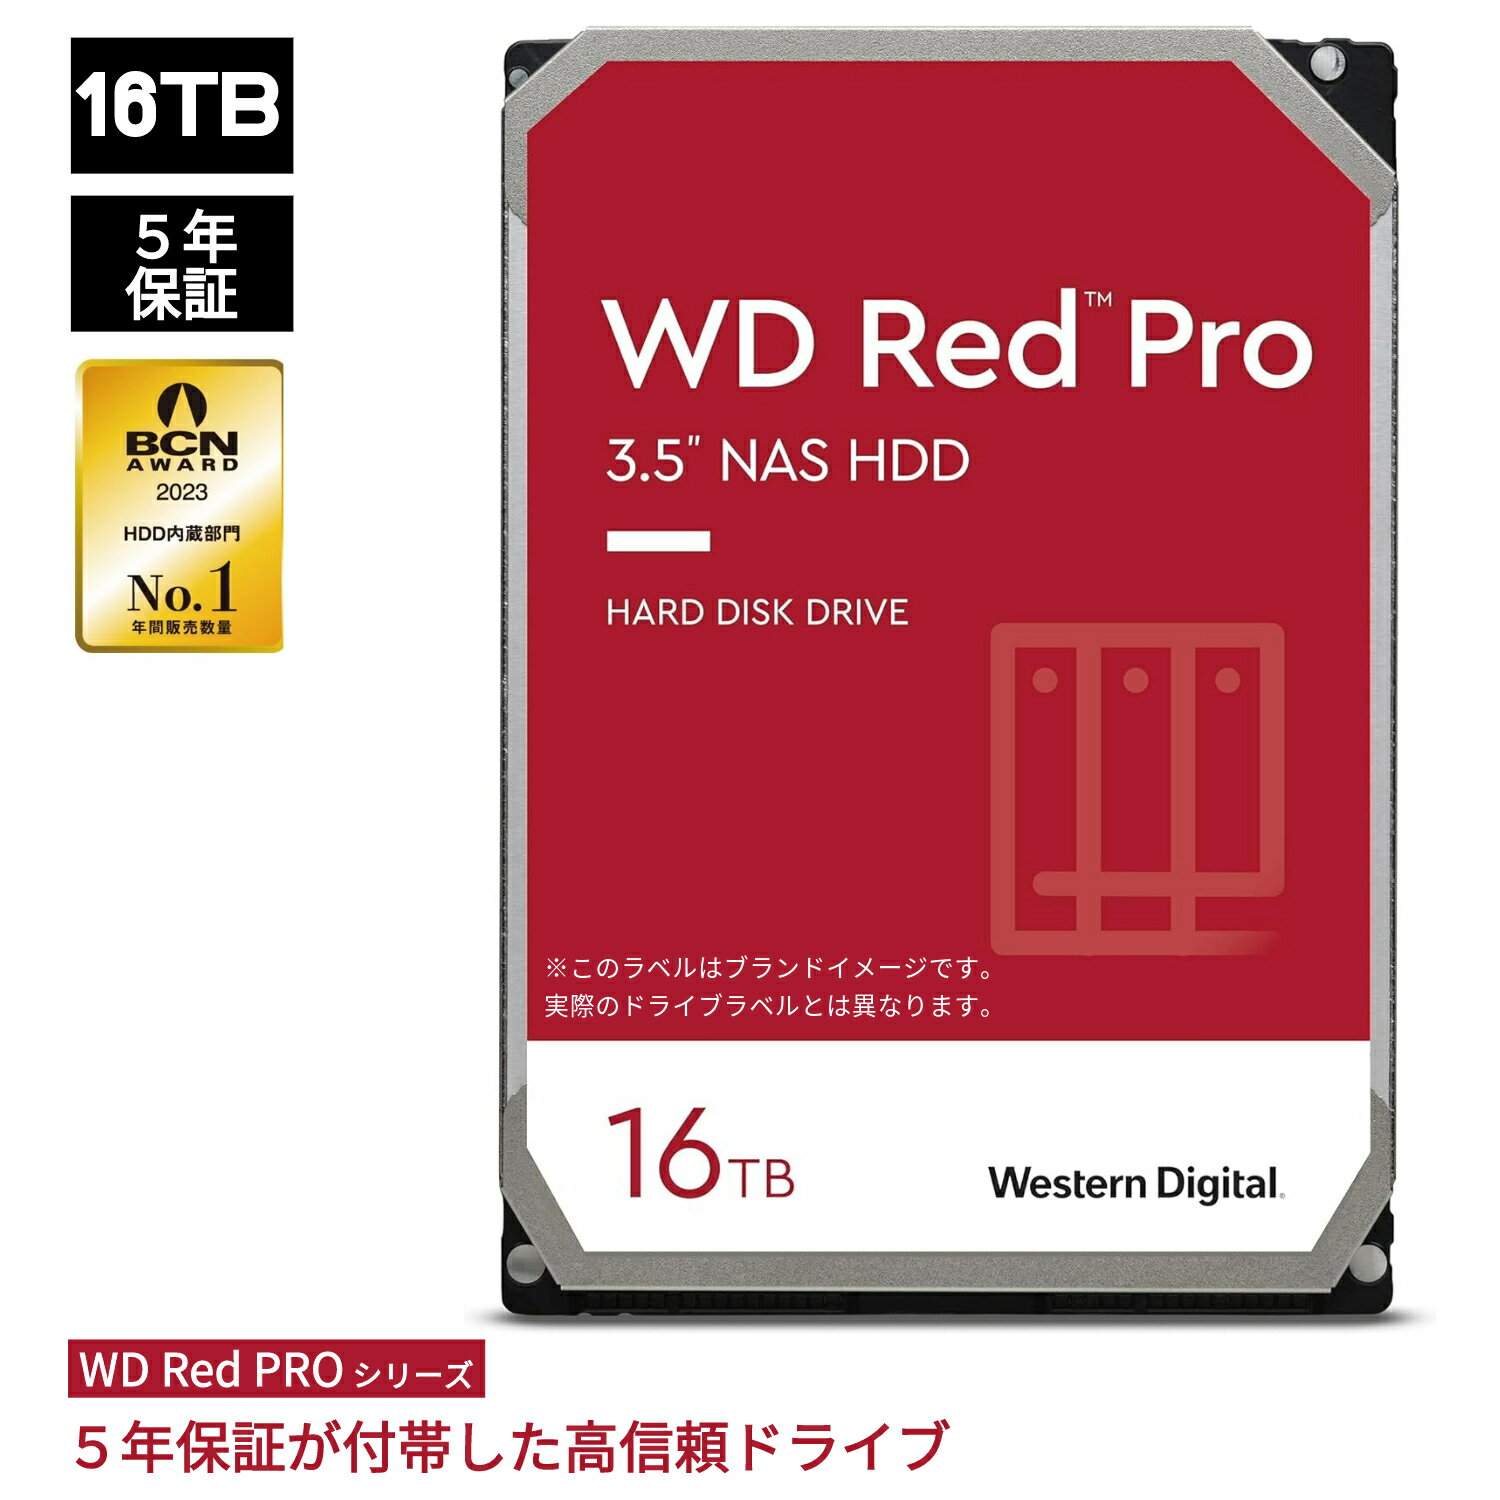 【国内正規流通品】Western Digital ウエスタンデジタル 内蔵 HDD 16TB WD Red Pro NAS RAID (CMR) 3.5インチ WD161KFGX 内蔵hdd バックアップ 用 パソコン ハードディスクドライブ ec 大容量 省電力 PCパーツ